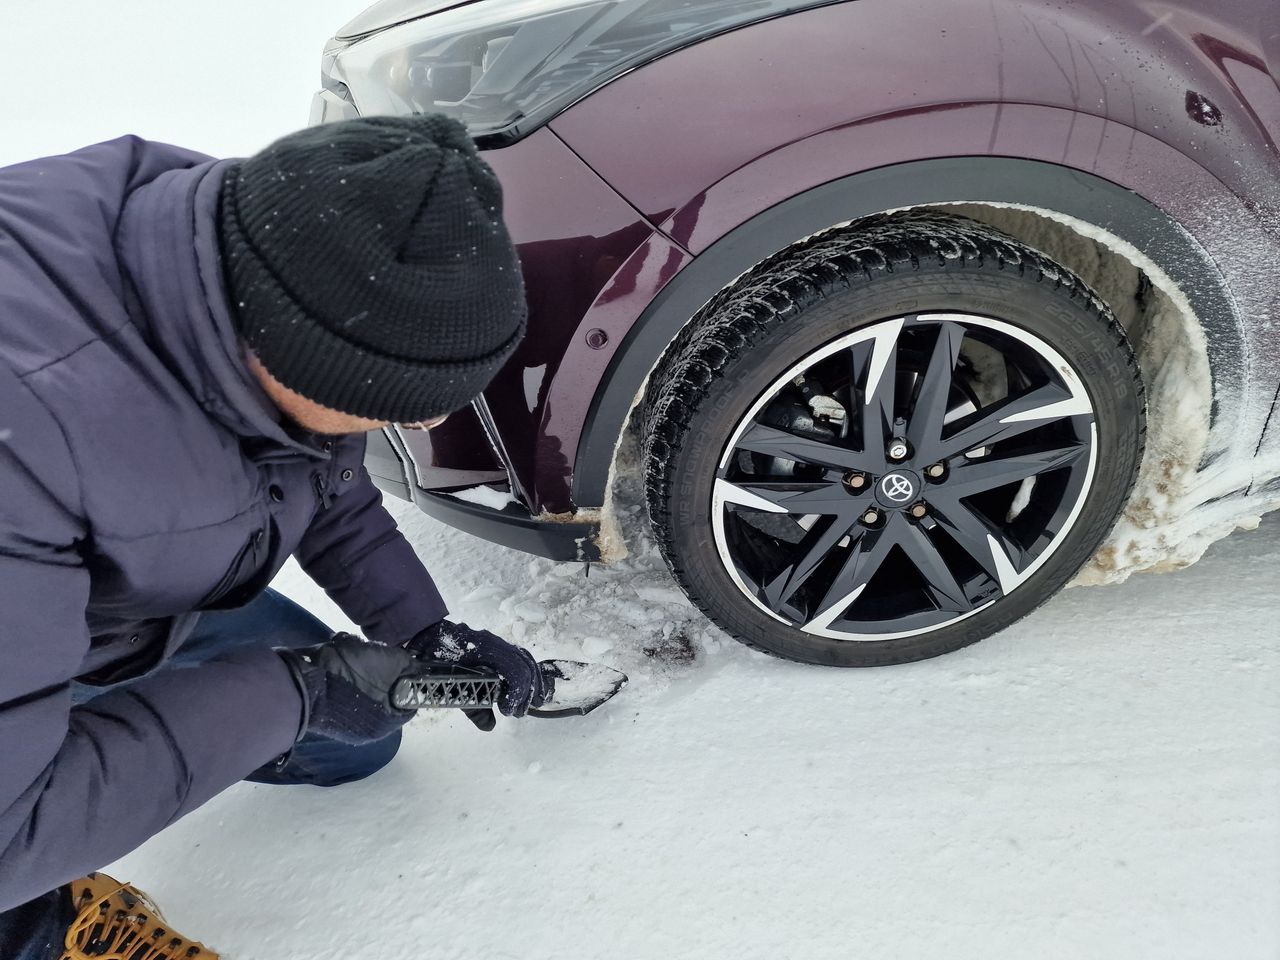 Jak radzić sobie, kiedy auto utknie w śniegu?